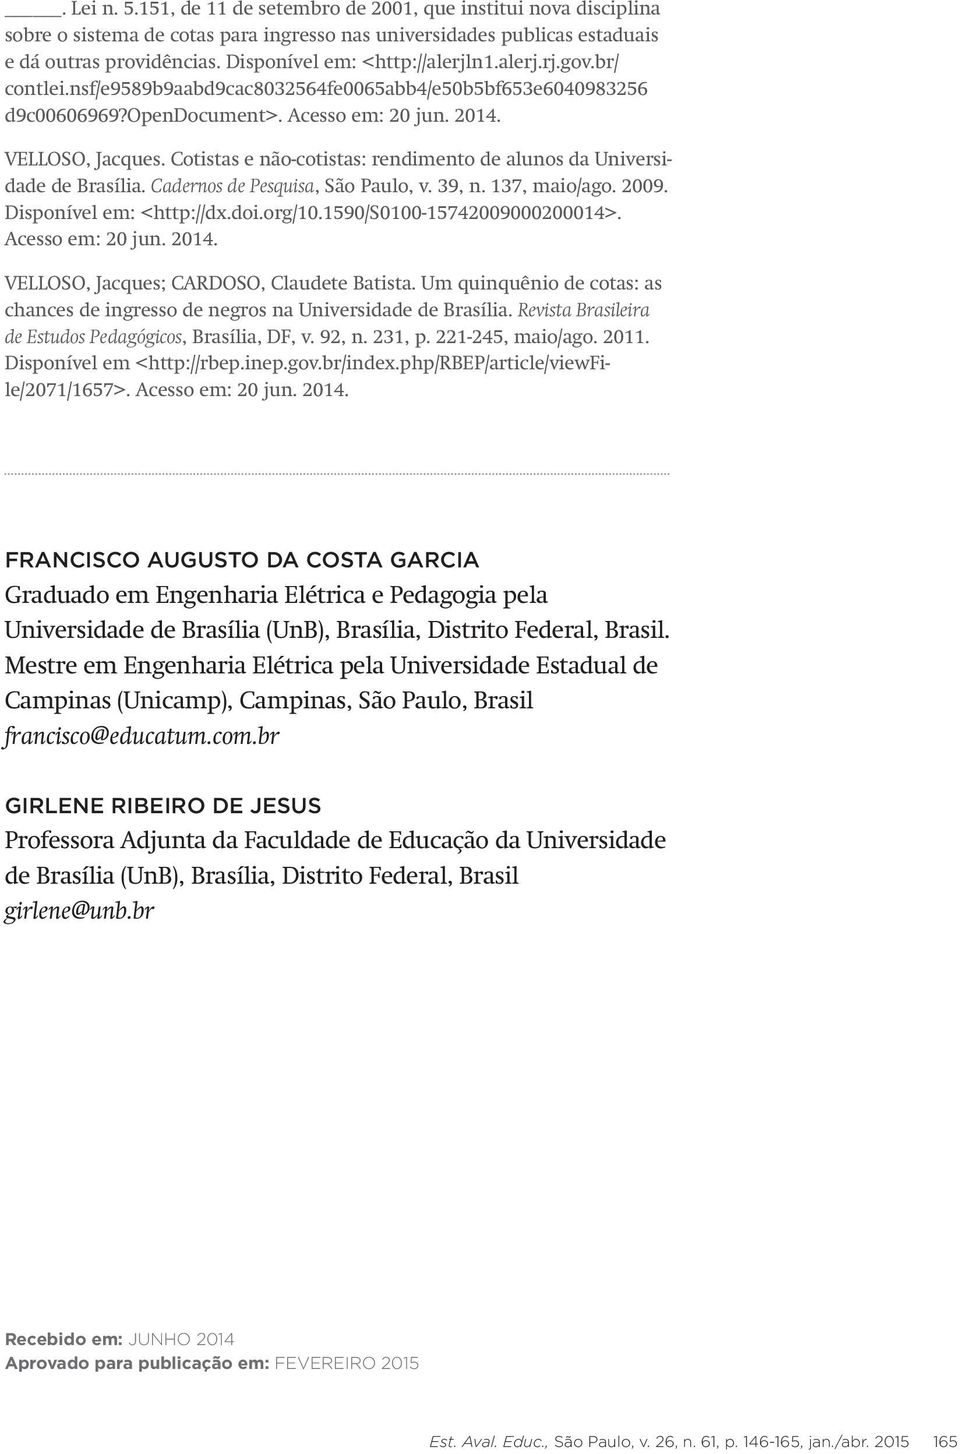 Cotistas e não-cotistas: rendimento de alunos da Universidade de Brasília. Cadernos de Pesquisa, São Paulo, v. 39, n. 137, maio/ago. 2009. Disponível em: <http://dx.doi.org/10.